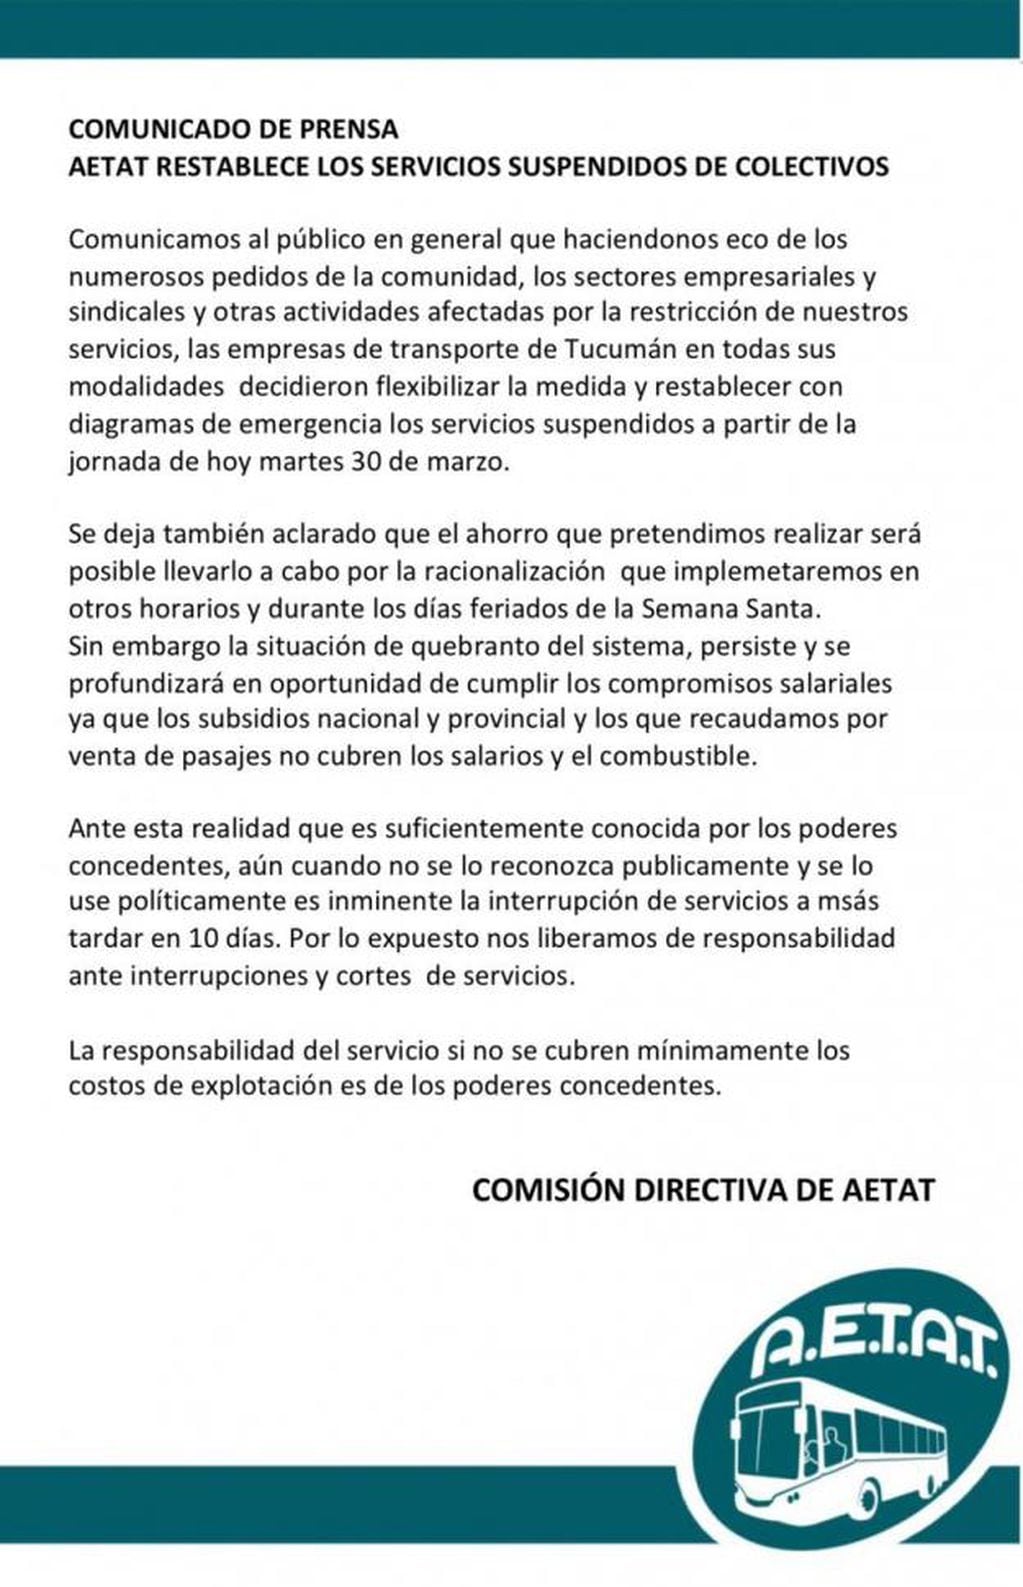 Comunicado oficial de AETAT.